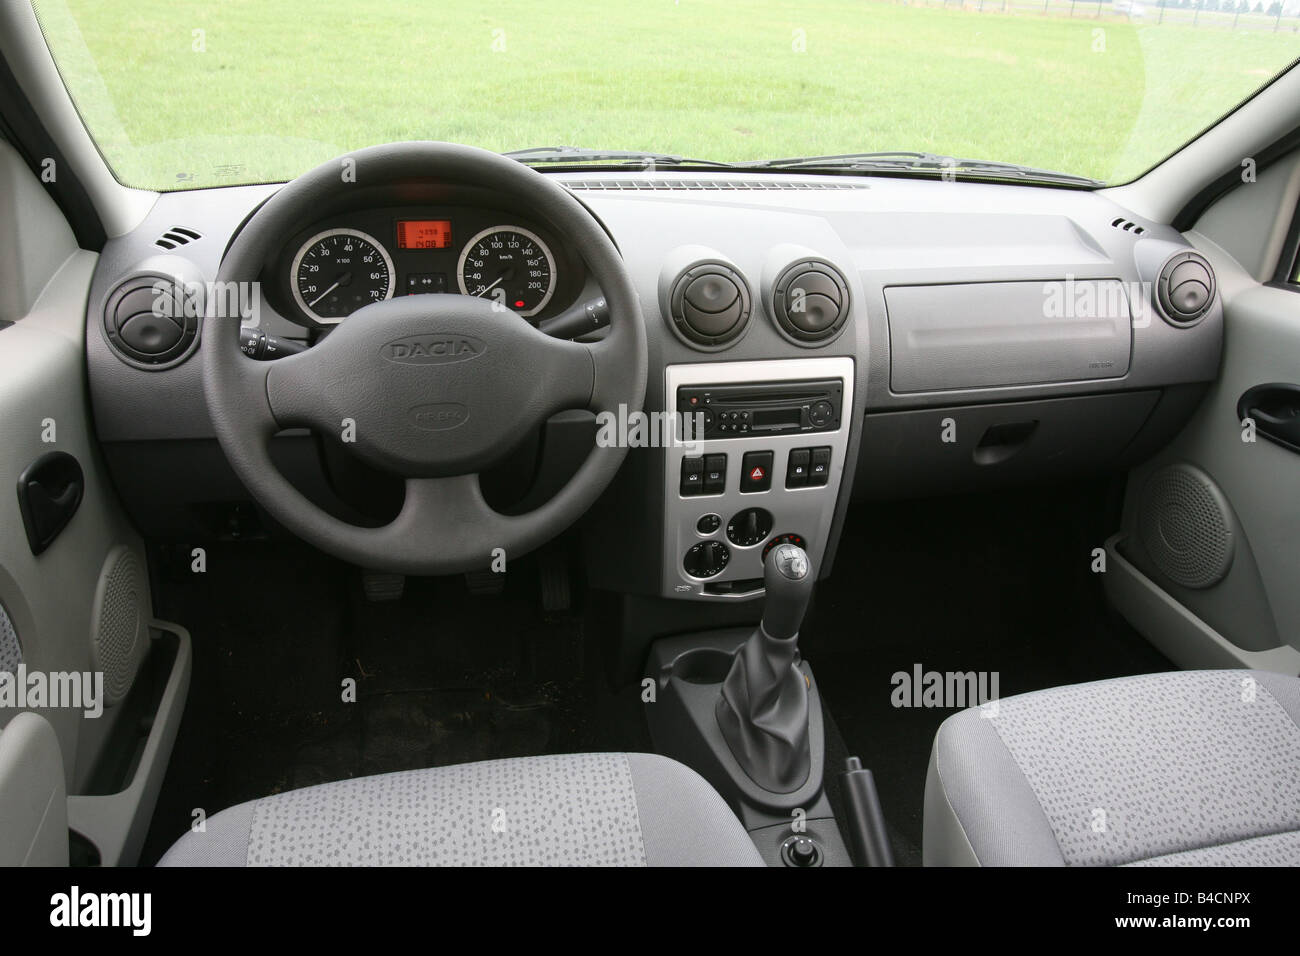 Dacia Logan 1.5 dCi, modelo del año 20056, plata, gris claro, vista  interior, vista desde el interior, la cabina, técnica/accesorios,  descriptor de acceso Fotografía de stock - Alamy